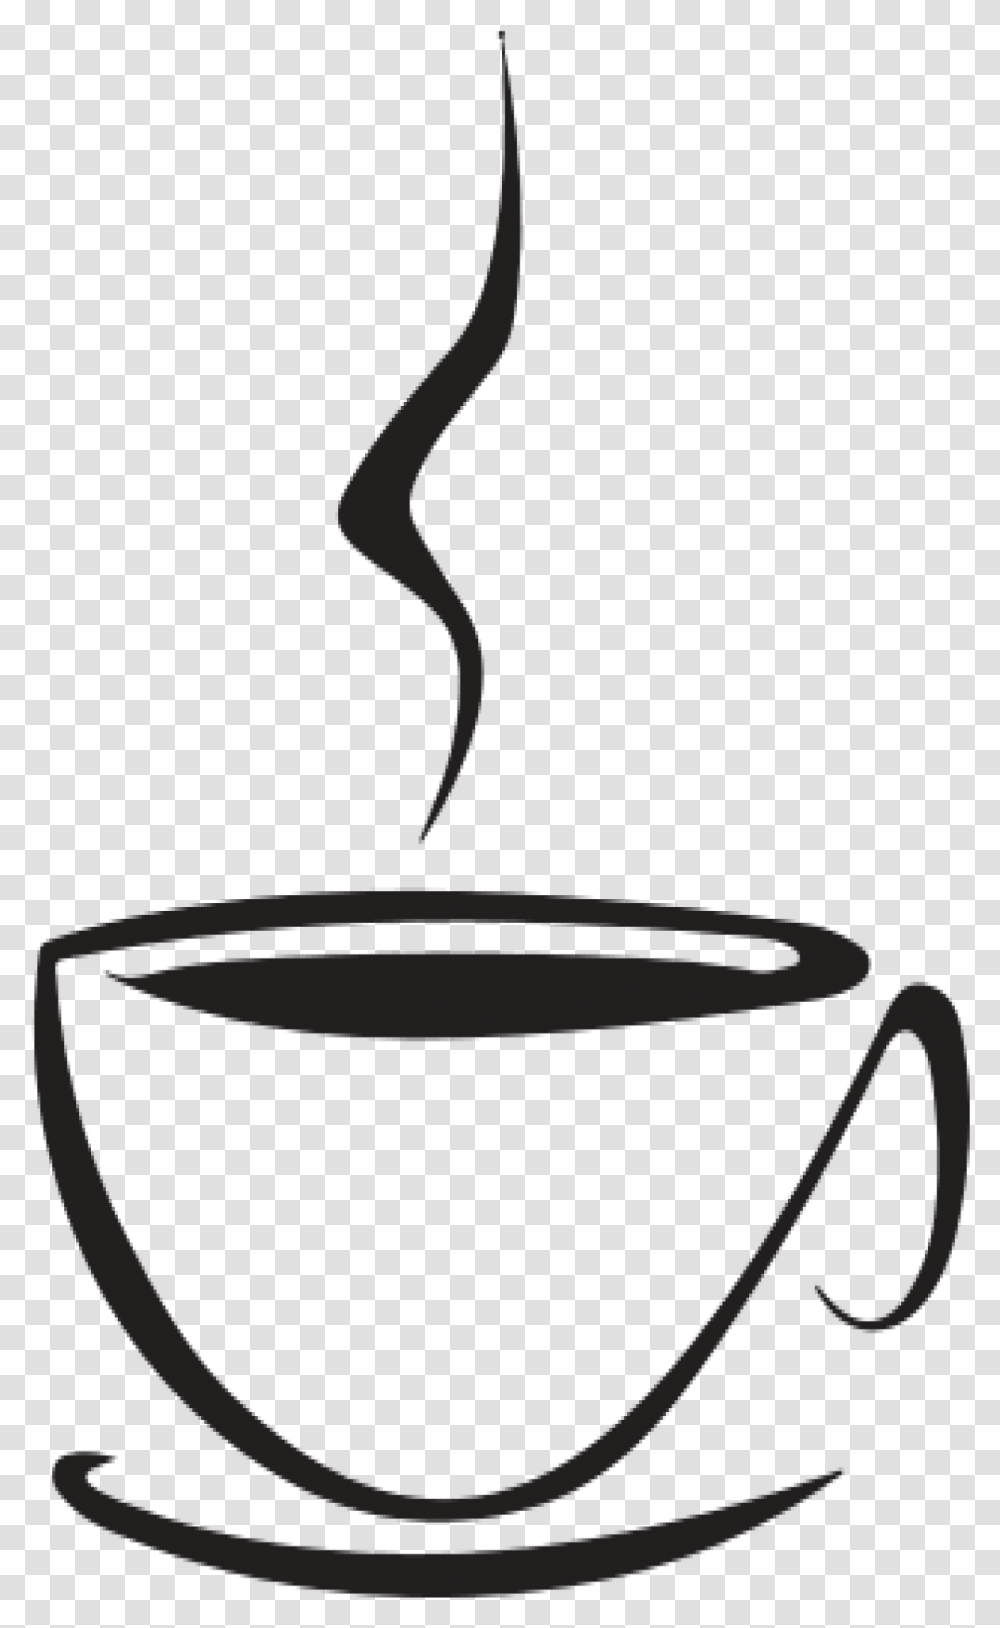 Tea Clipart Chai Latte Coffee Cup, Bowl, Pot, Beverage, Drink Transparent Png